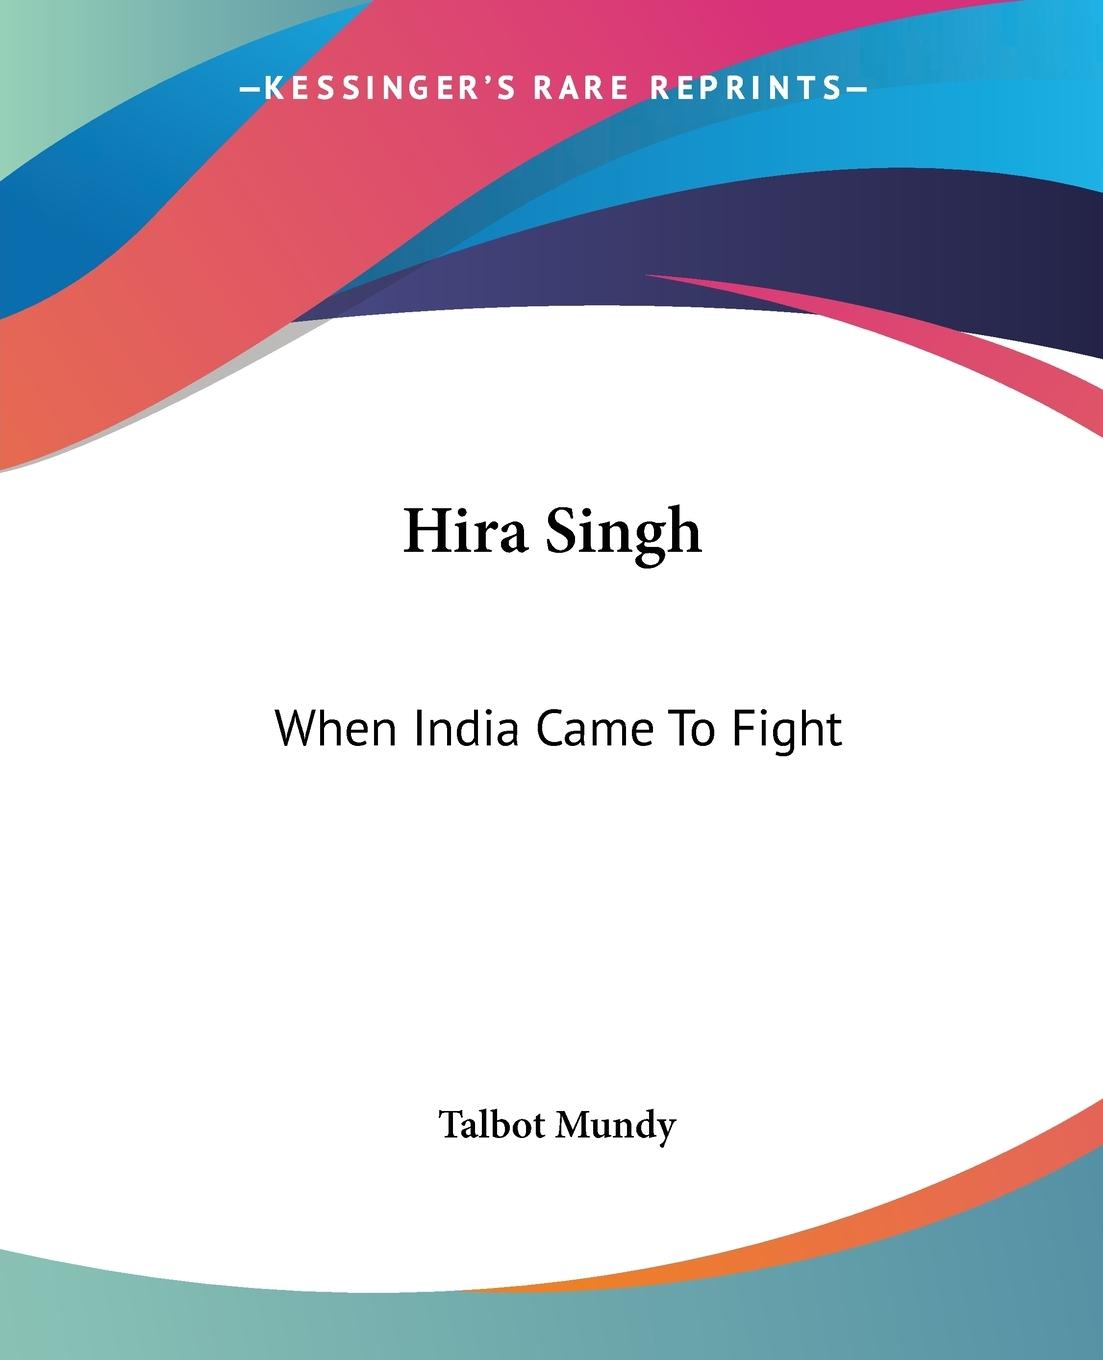 Hira Singh - Mundy, Talbot